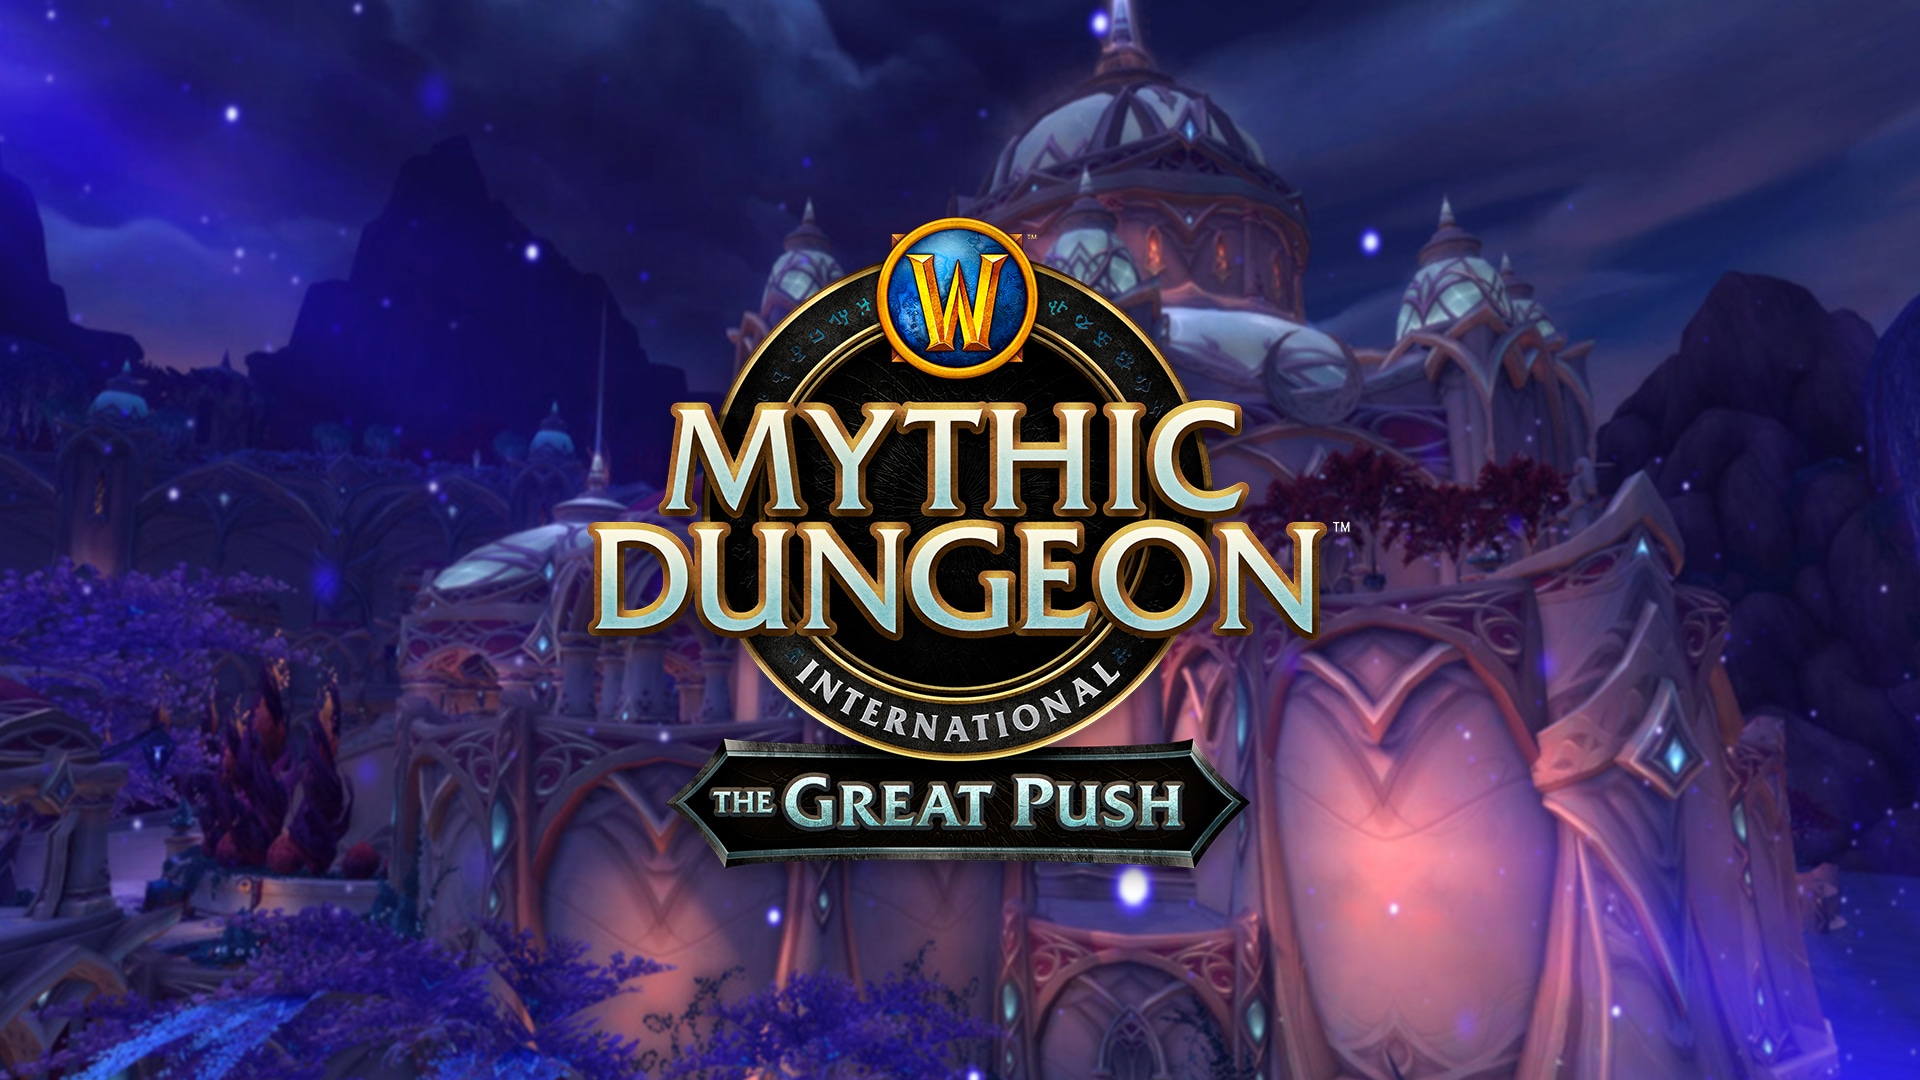 La Stagione 2 di The Great Push di World of Warcraft sta arrivando!